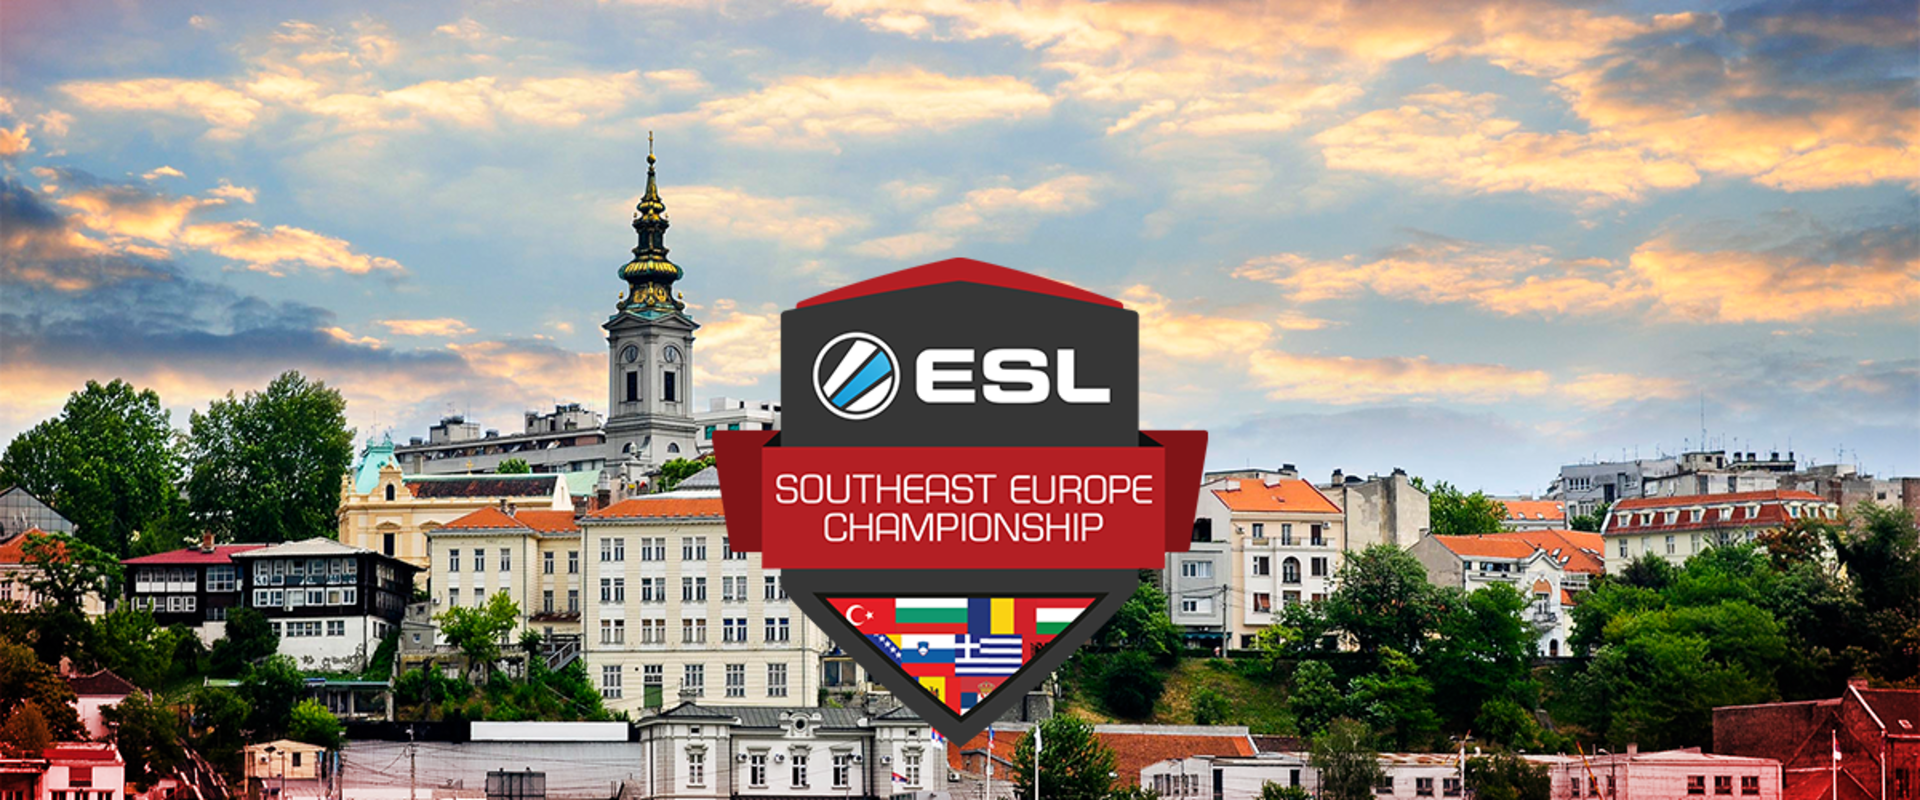 Belgrádban lesz a SEC döntője, két magyar csapat helye már biztos a rájátszásban!